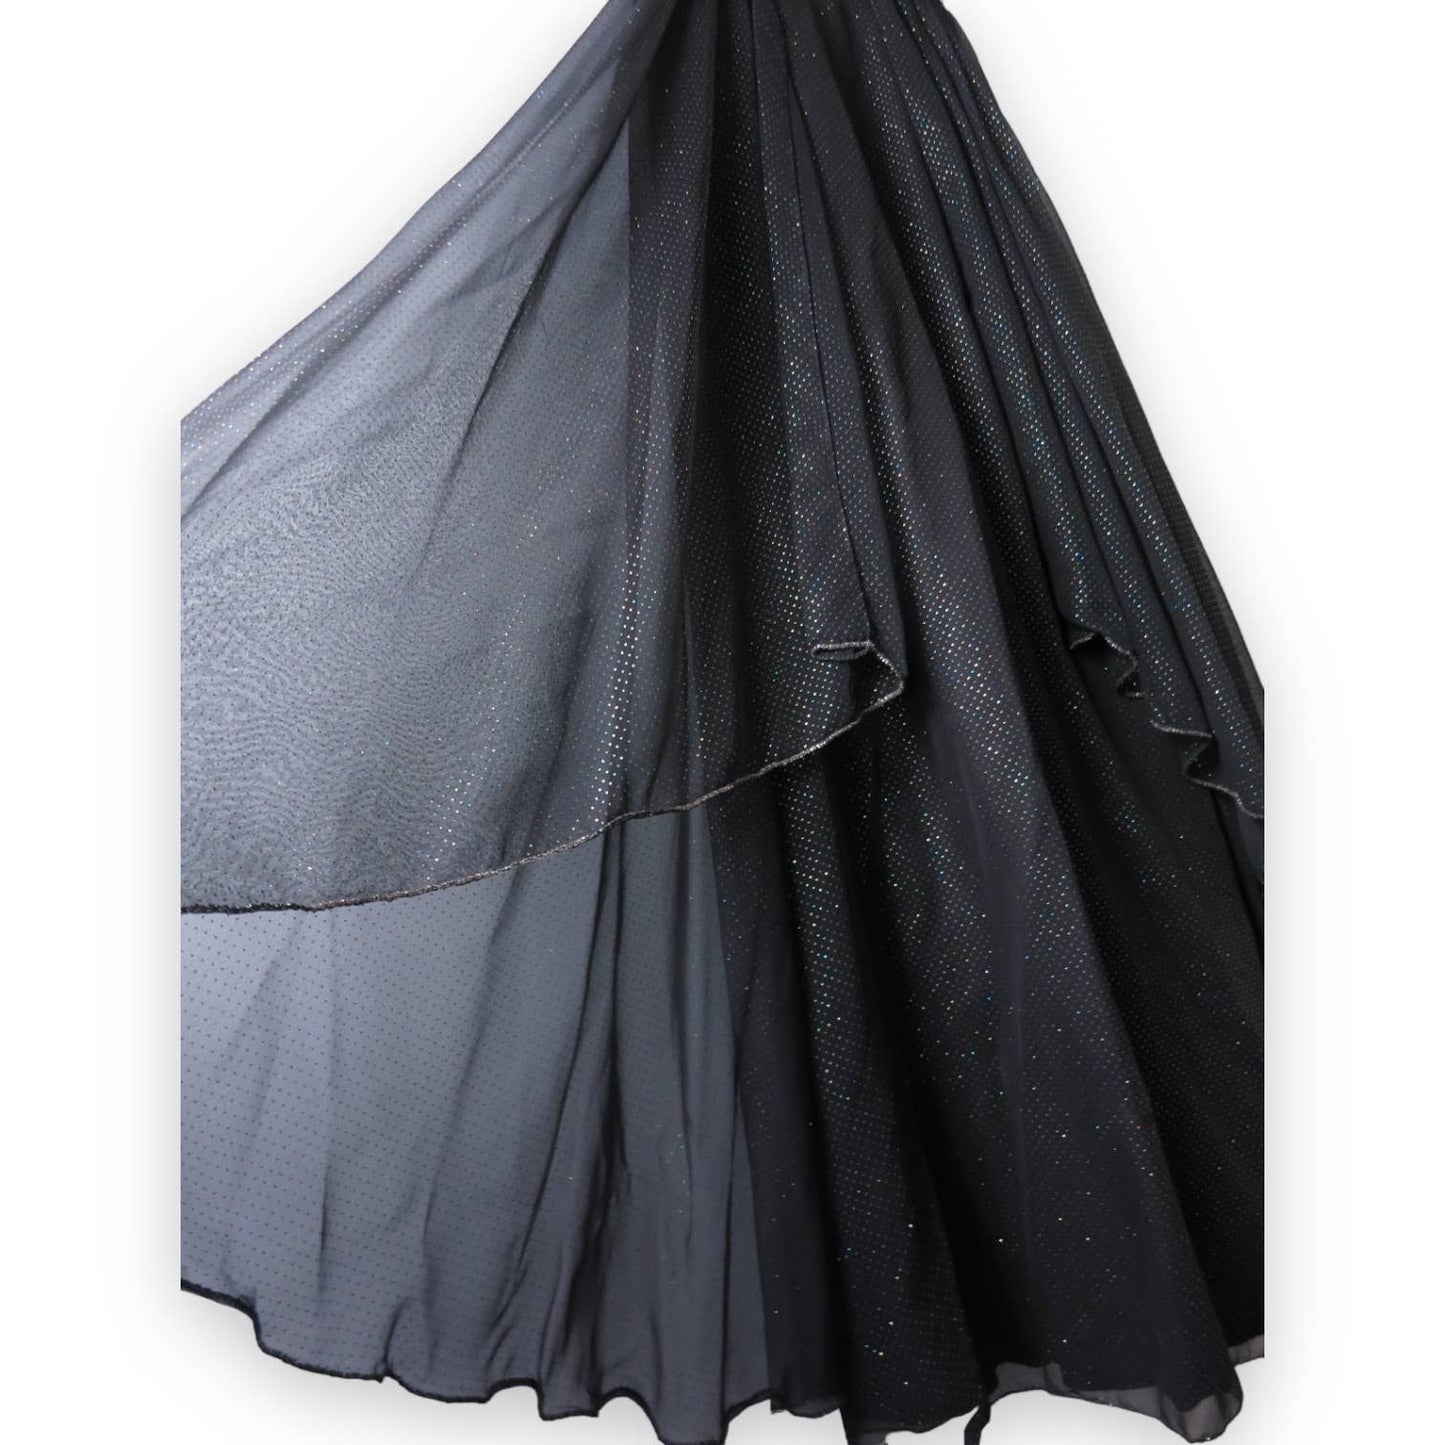 80s VTG Black Crystal Embellished Evening Gown S/M